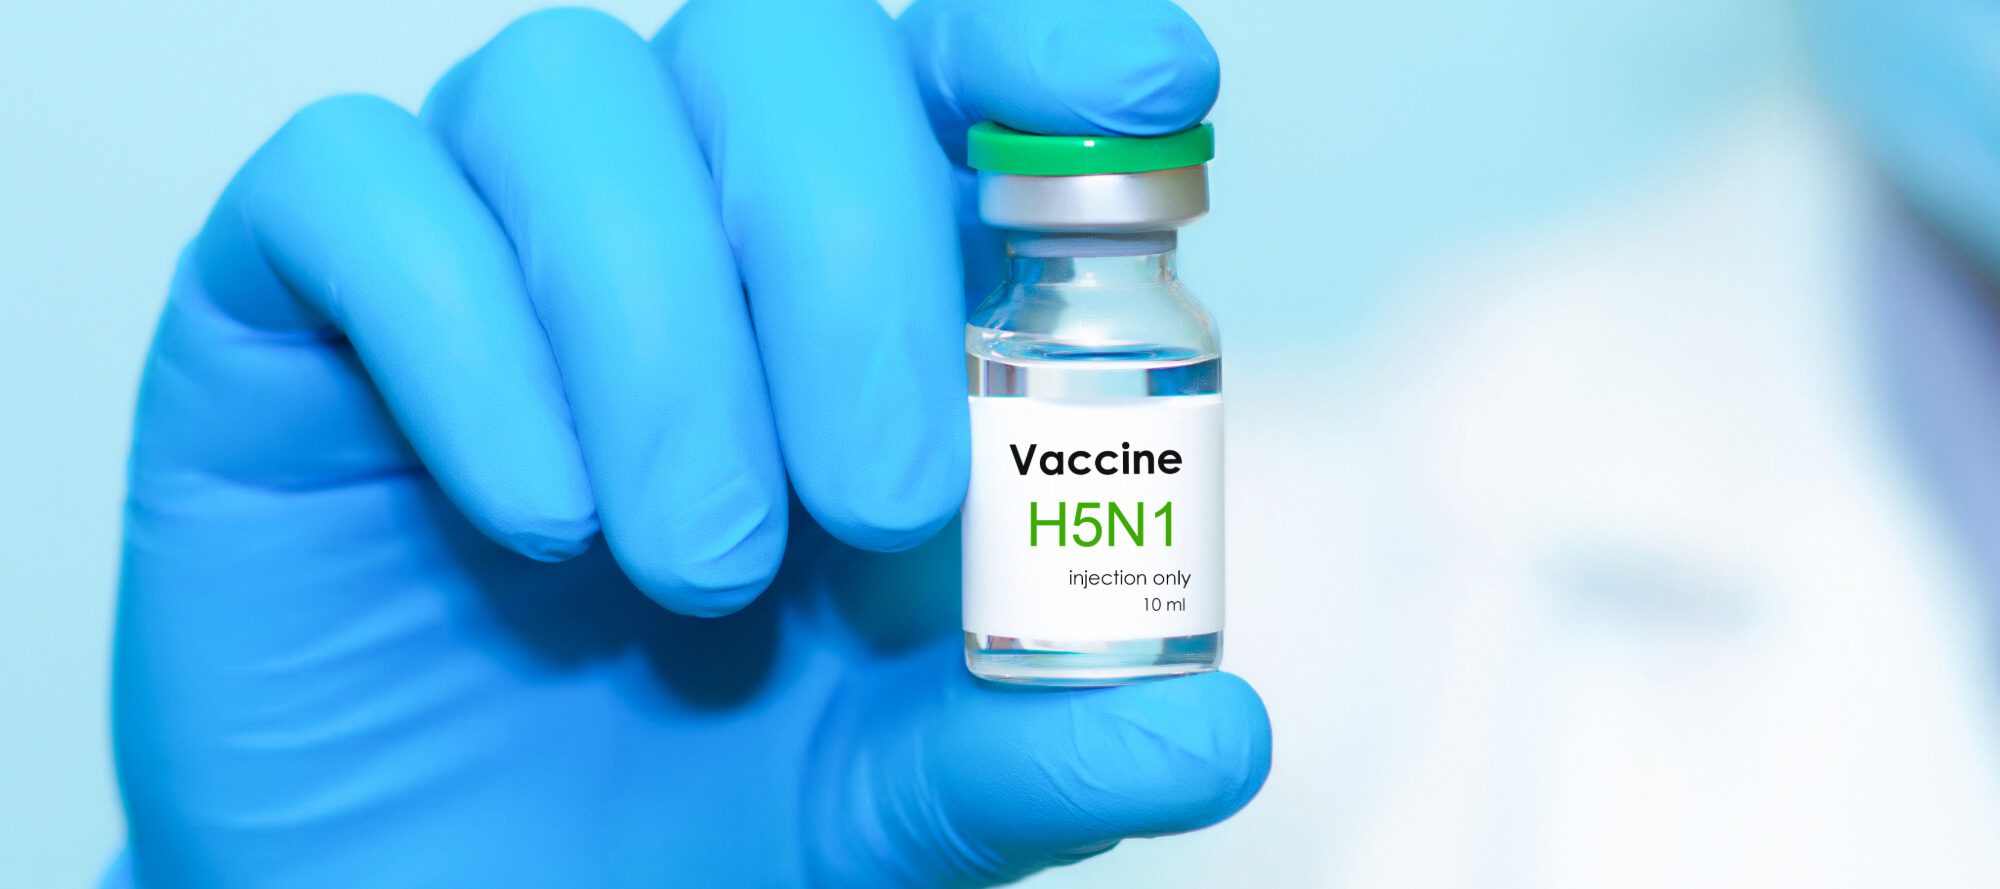 Vaccine vial labeled H5N1 virus